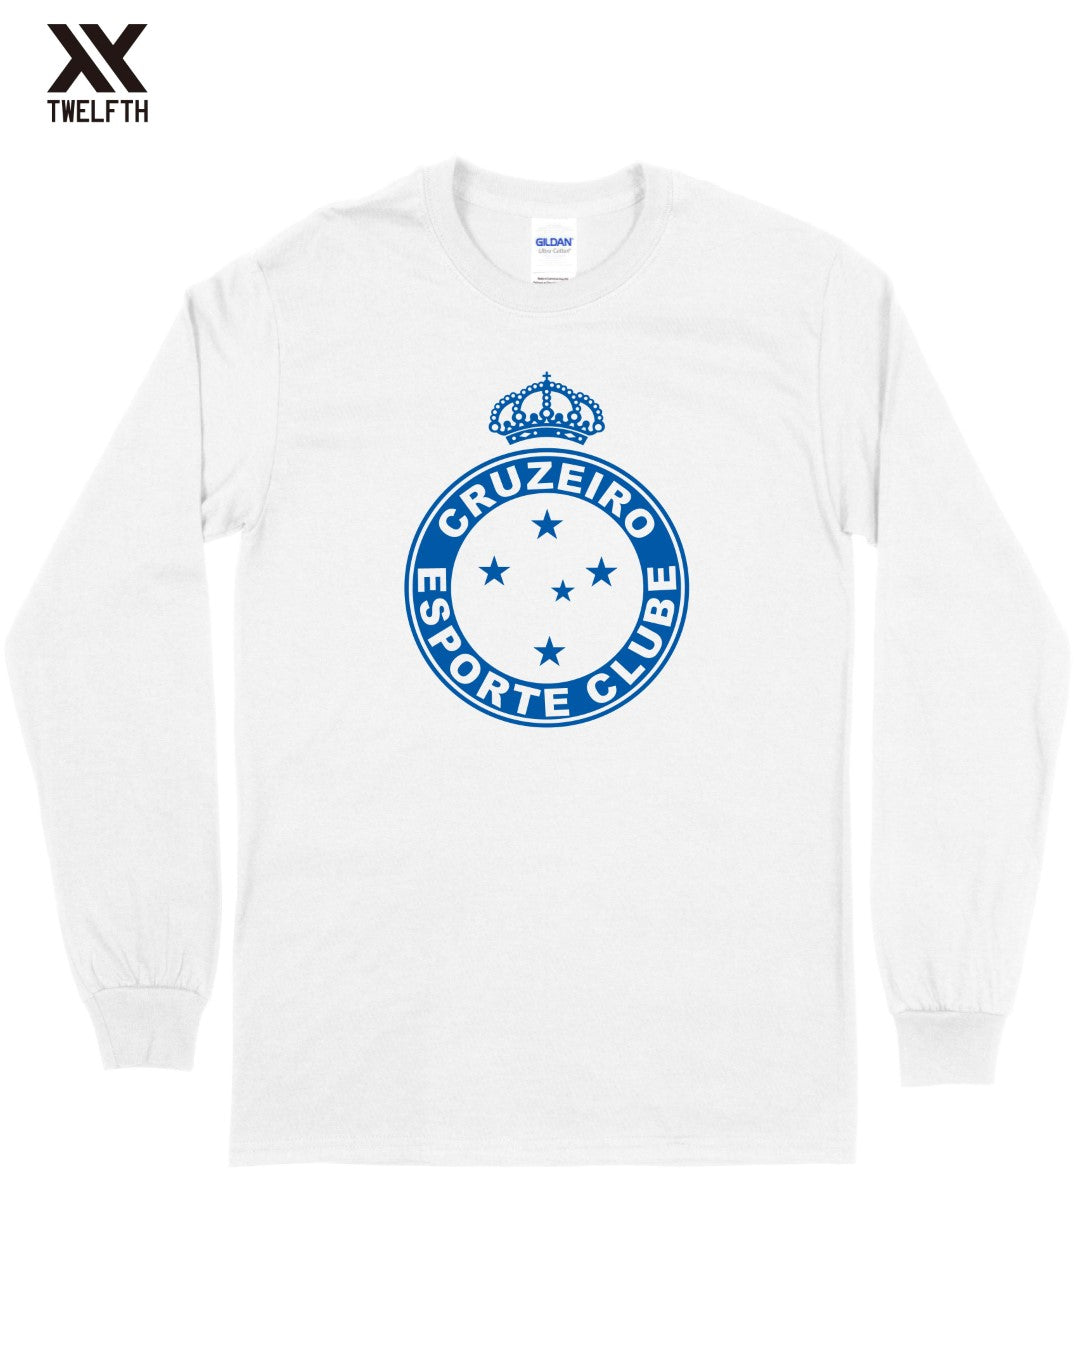 Cruzeiro Crest T-Shirt - Mens - Long Sleeve